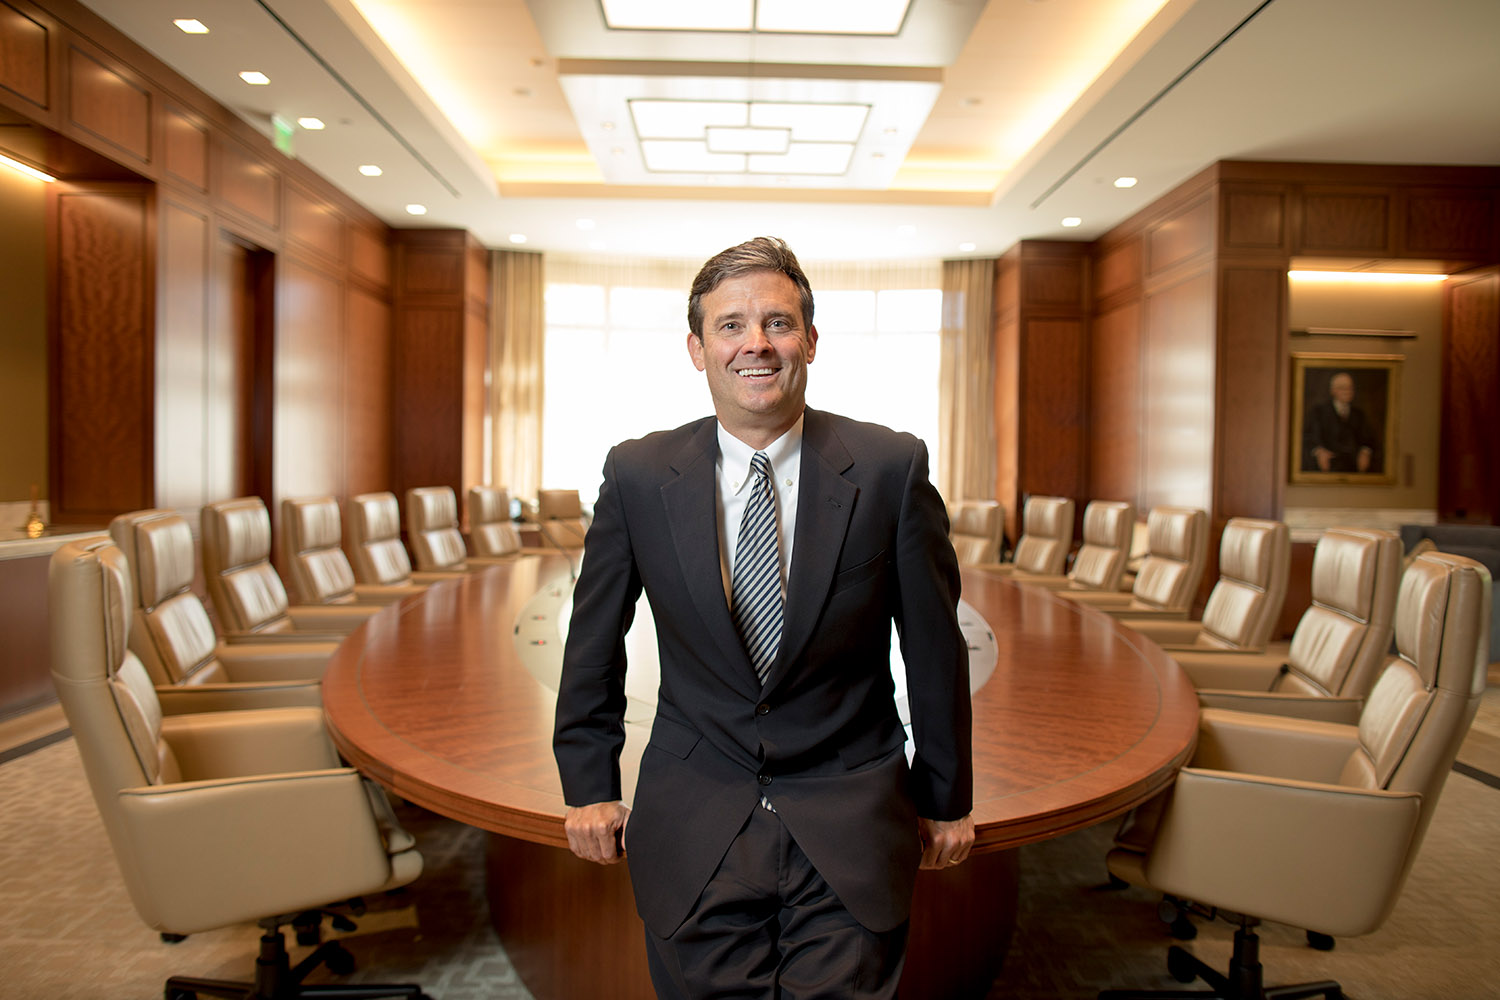 business photo of duke endowment president.jpg